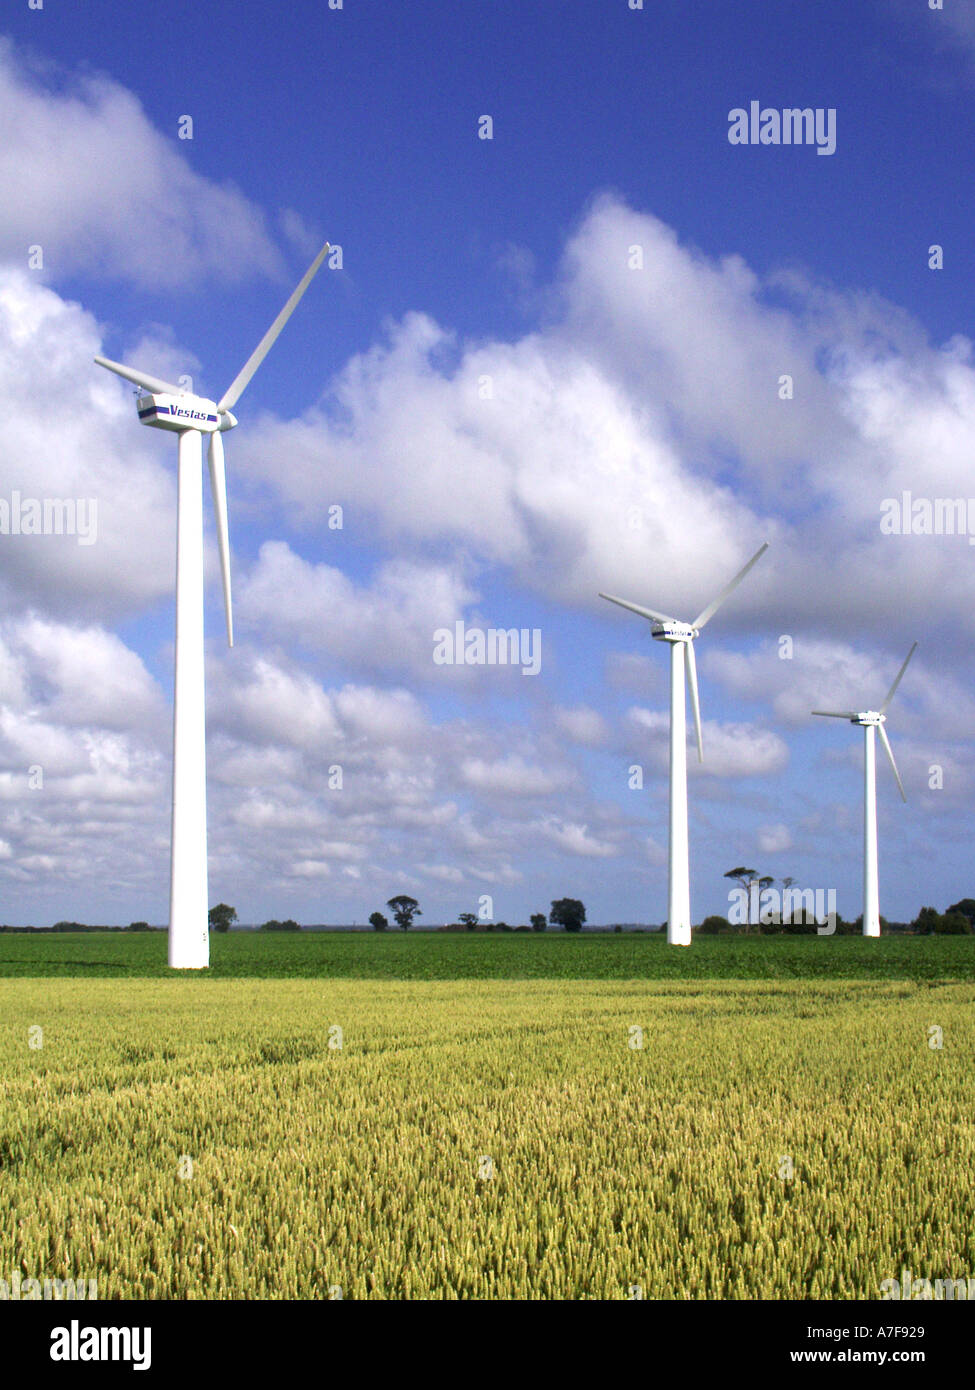 Ackerland & wind turbine Teil der Wind Generator Bauernhof von dampfturbinenanlagen von Powergen Produktion grüner Energie an Martham Norfolk East Anglia England Großbritannien Stockfoto